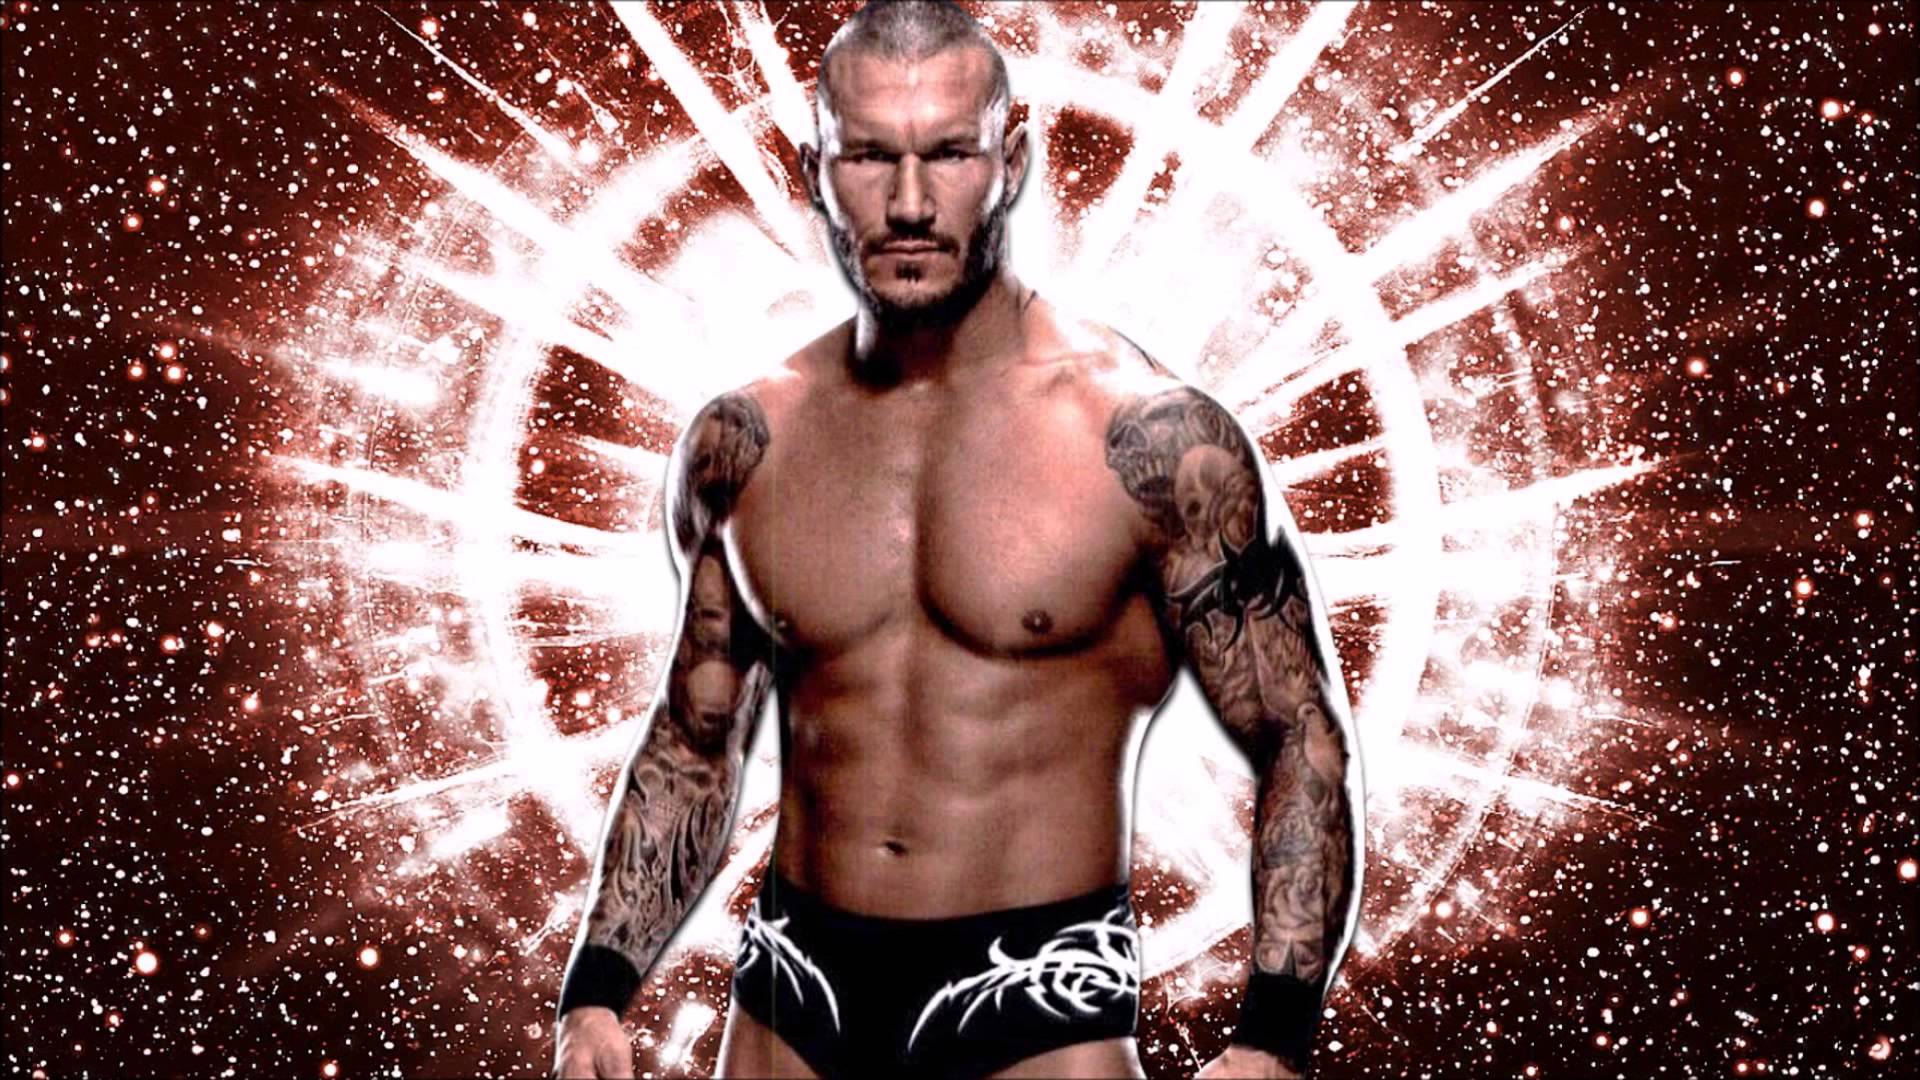 Randy Orton 2015 Theme Song